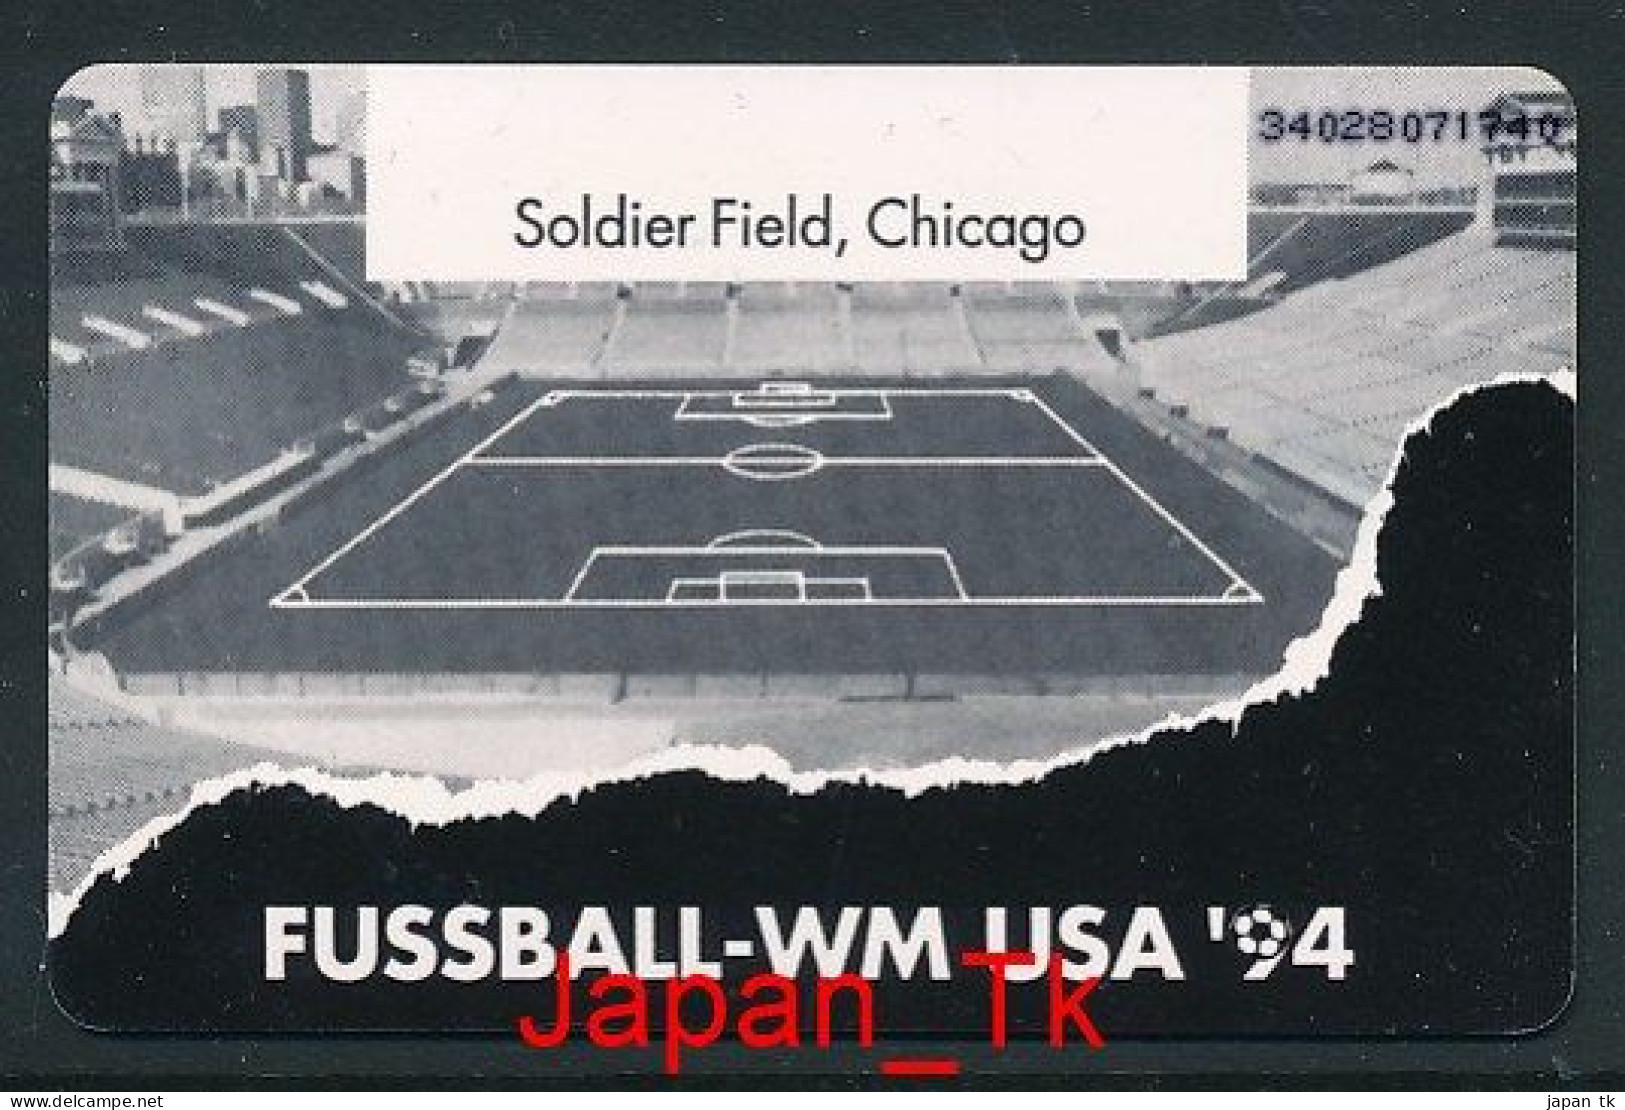 GERMANY O 469 94 Fußball WM USA 94 - Aufl  3 500 - Siehe Scan - O-Series : Series Clientes Excluidos Servicio De Colección